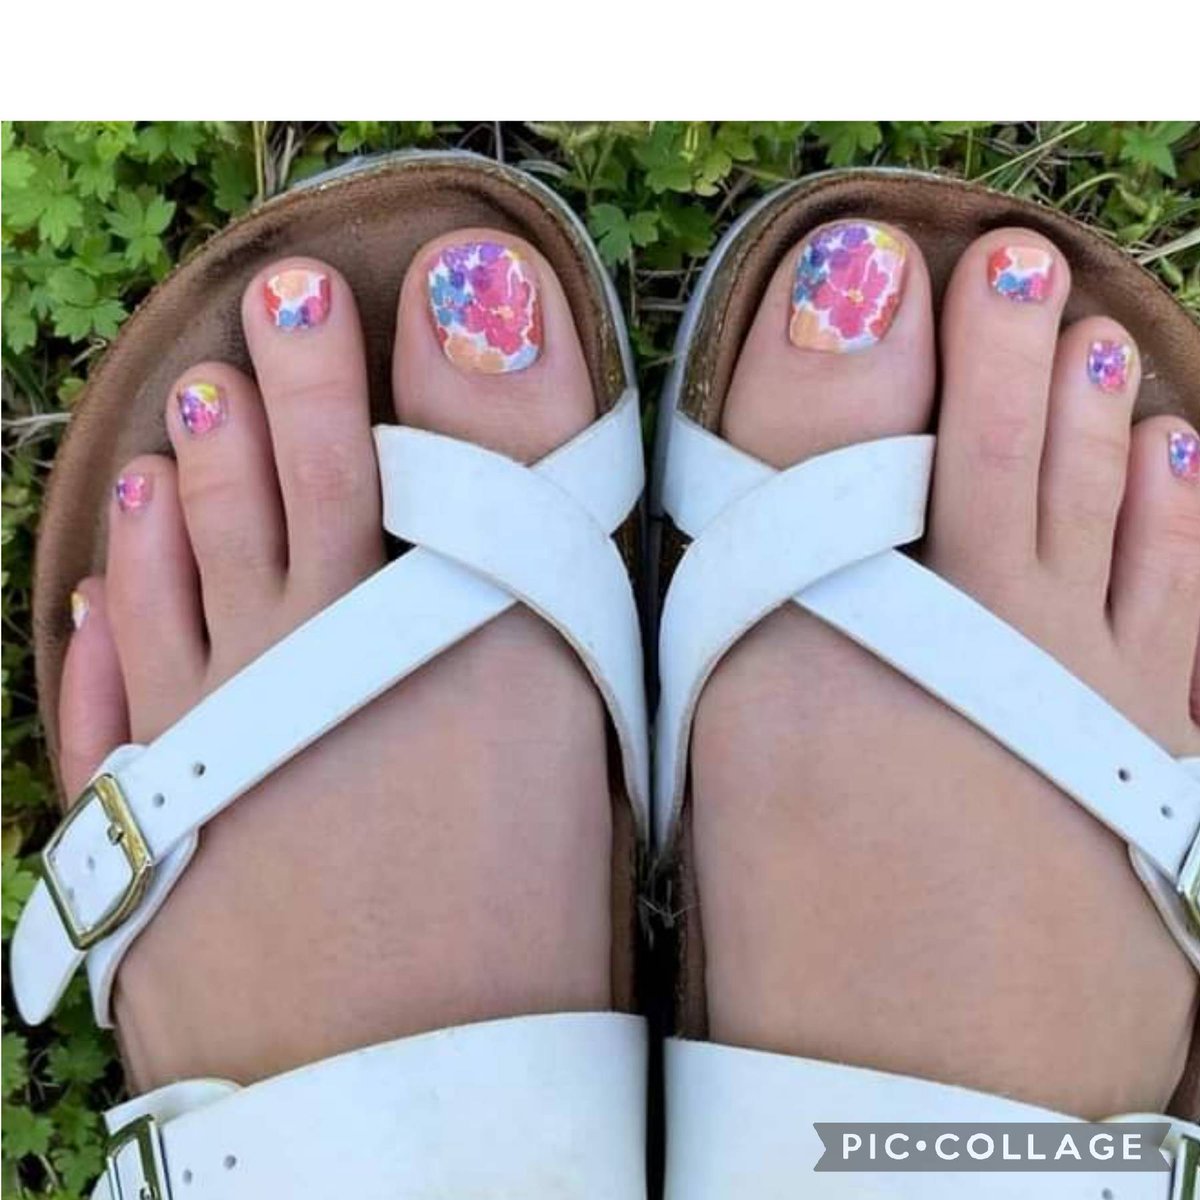 Sandal beauty
#nails #nailswag #nailstagram #nailsofinstagram #nailsart #nailsoftheday #nails2inspire #nailsalon #nailsonfleek #nailsdid #NailStyle #nailsdesign #nailsdone #nailsofig #nailsmagazine #nailsaddict #nailspolish #nailsoftheweek #pedicure  #ladies